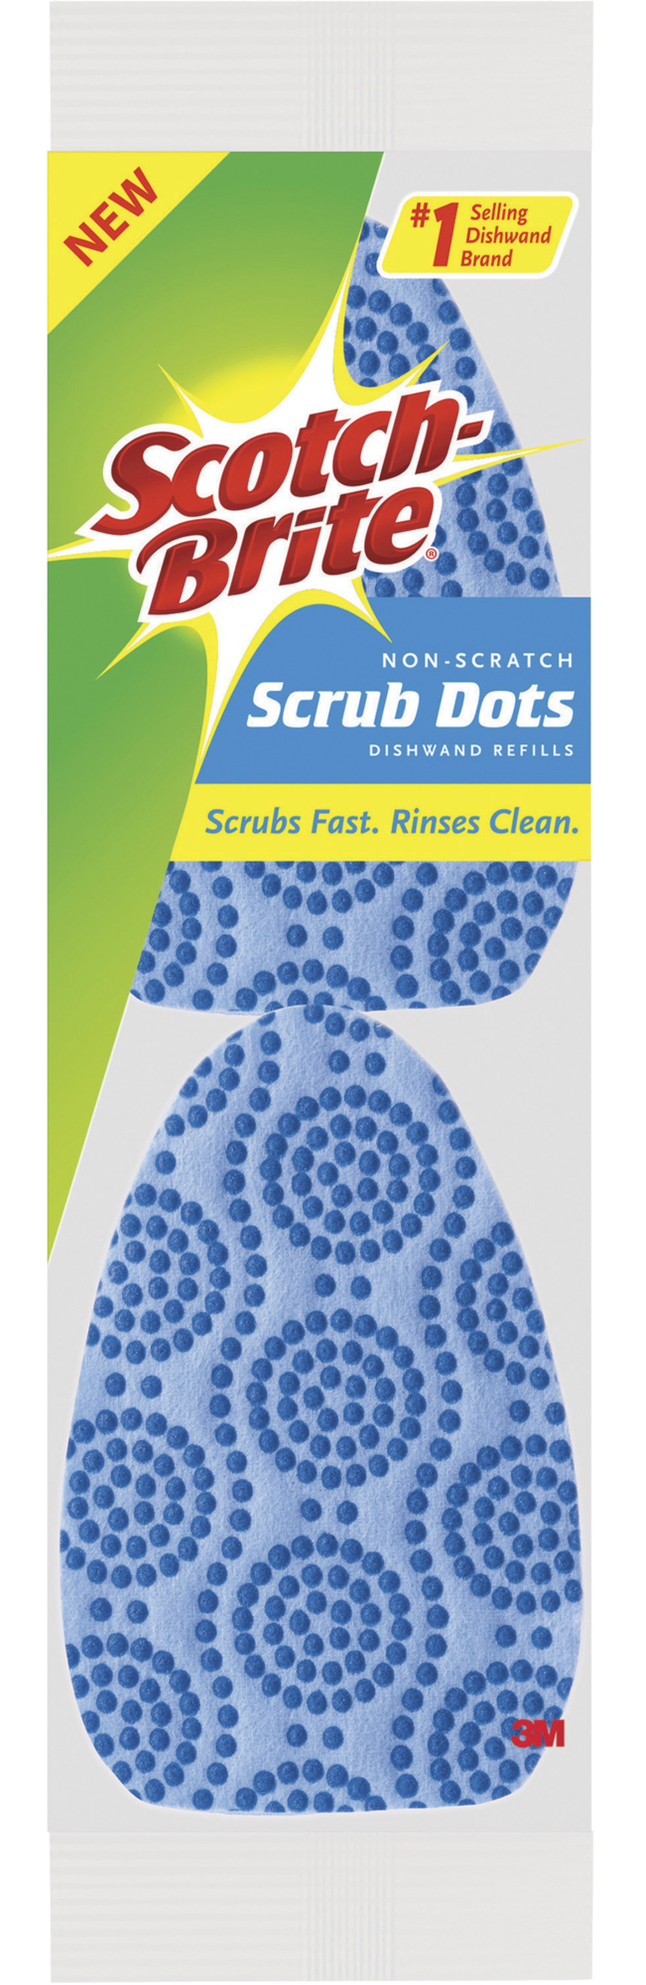 Scotch-Brite 2 Piece Scrub Dots Non-Scratch Dish Wand Refills 